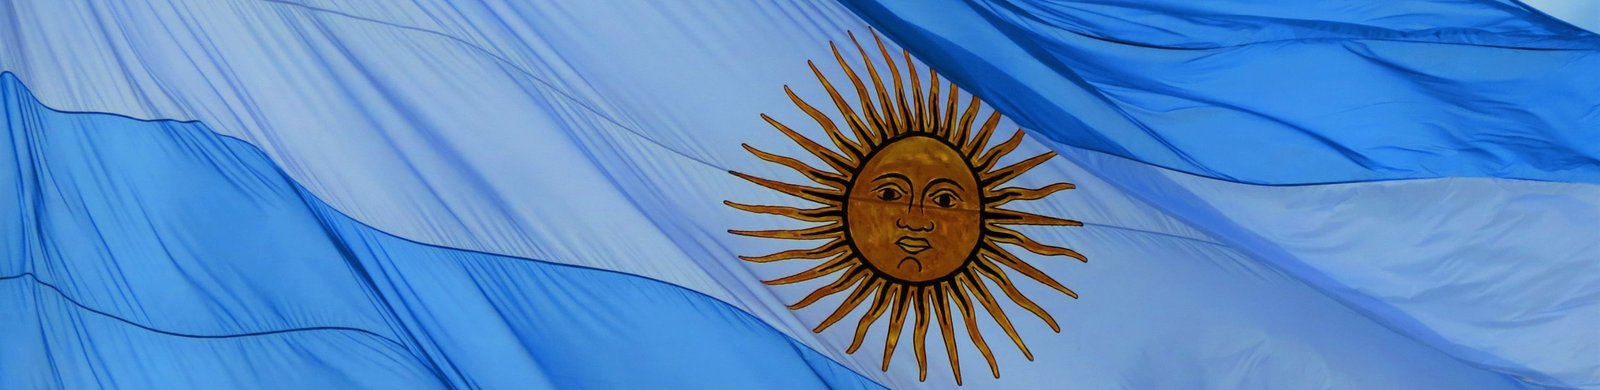 Día de nuestra Bandera Argentina.jpg